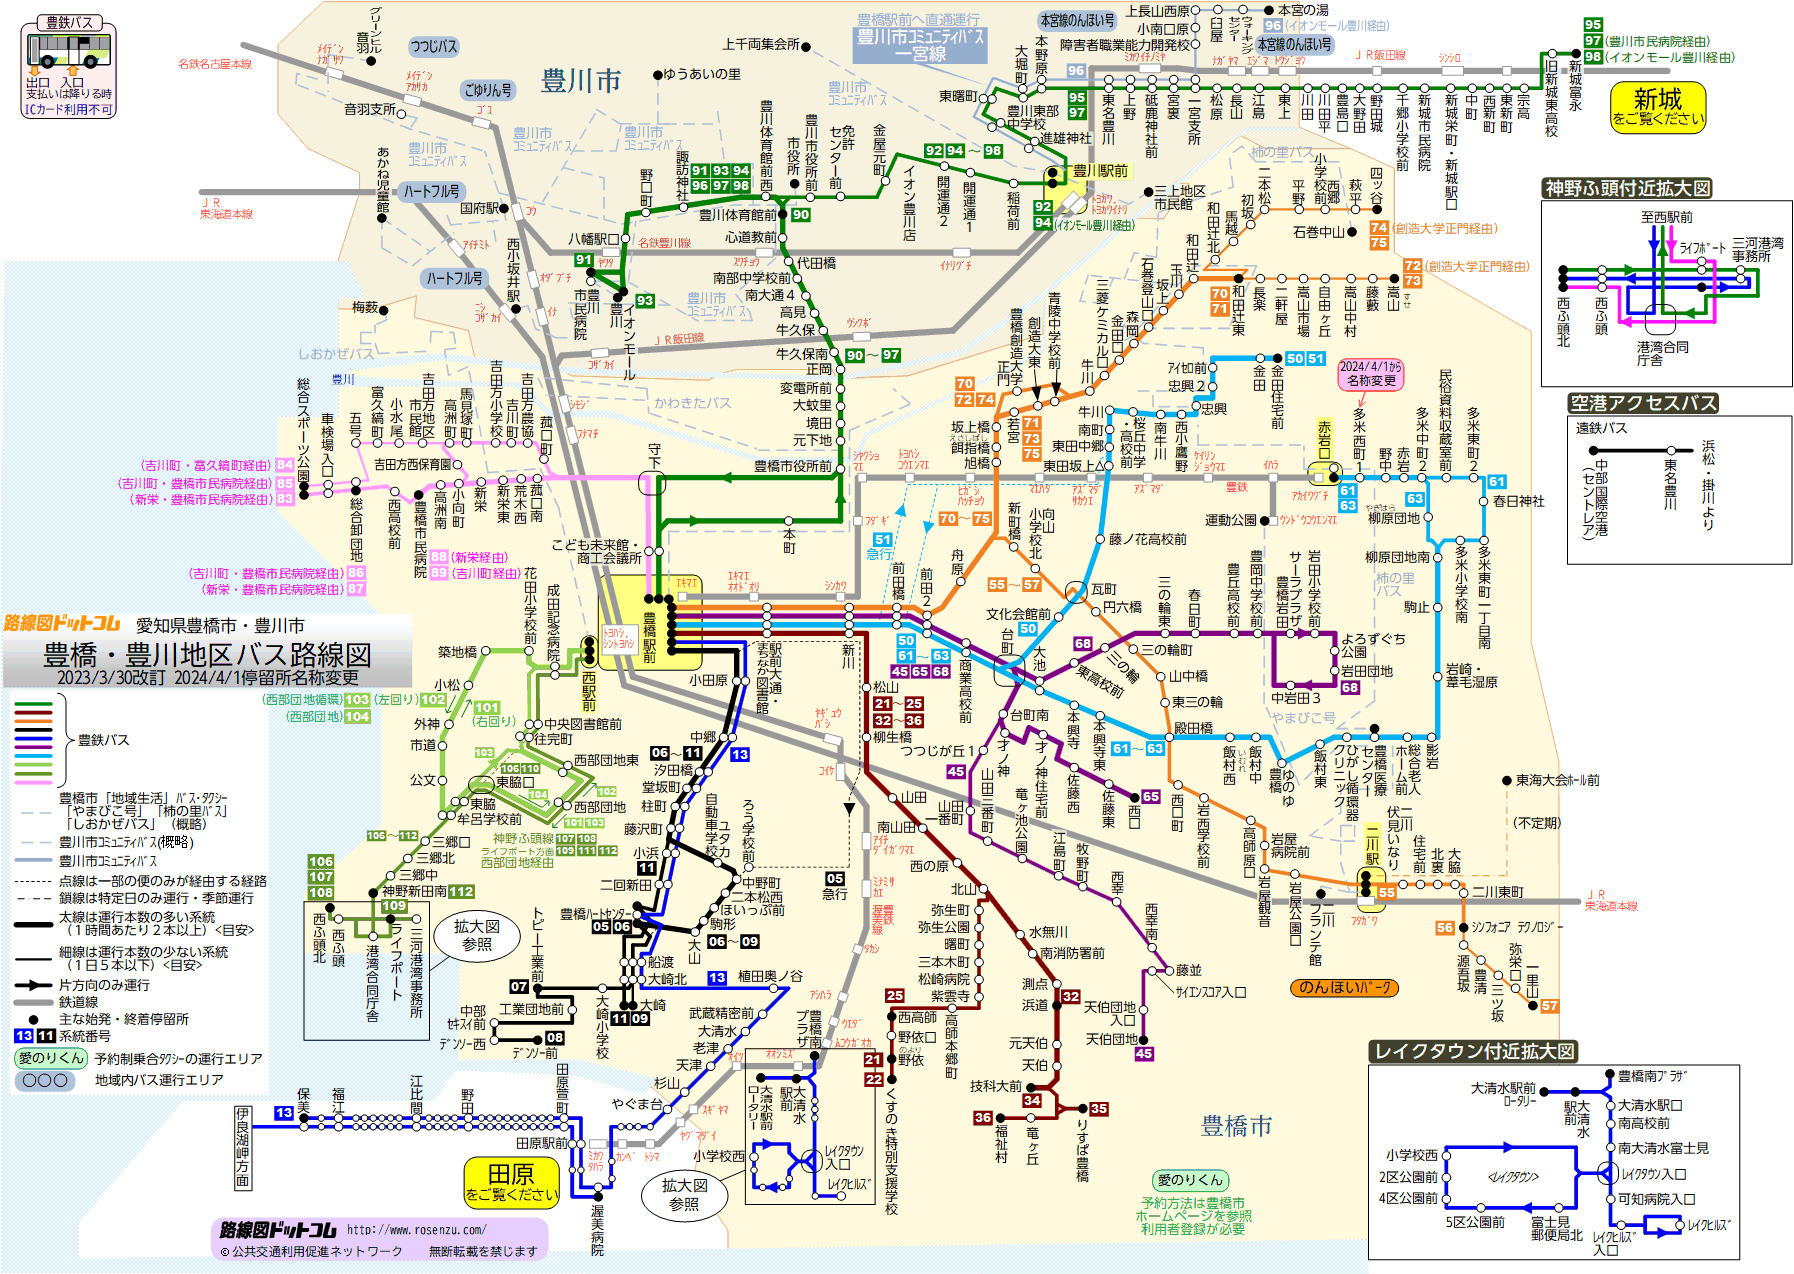 路線図ドットコム 愛知県 豊橋 豊川地区バス路線図